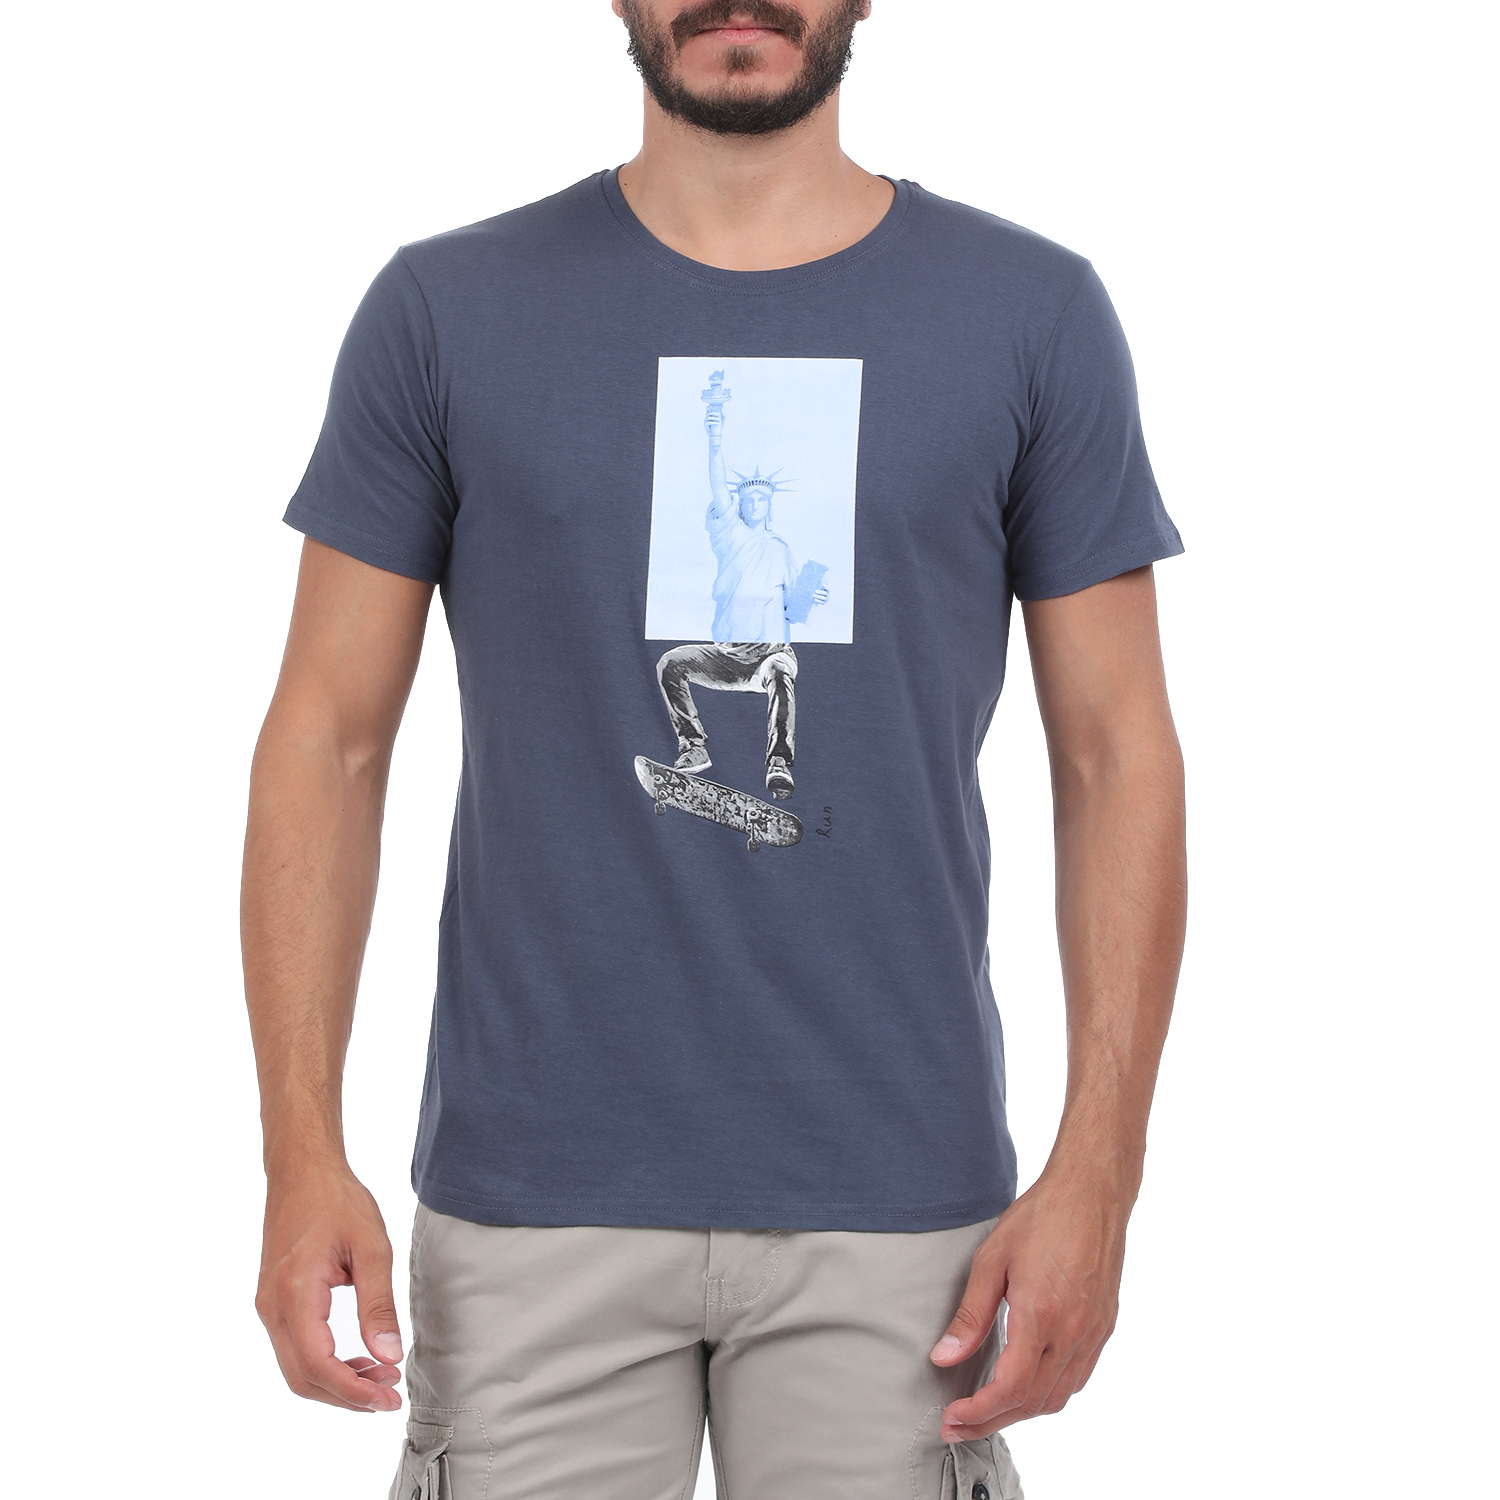 Ανδρικά/Ρούχα/Μπλούζες/Κοντομάνικες RUN - Ανδρική μπλούζα RUN BOX 5 μπλε